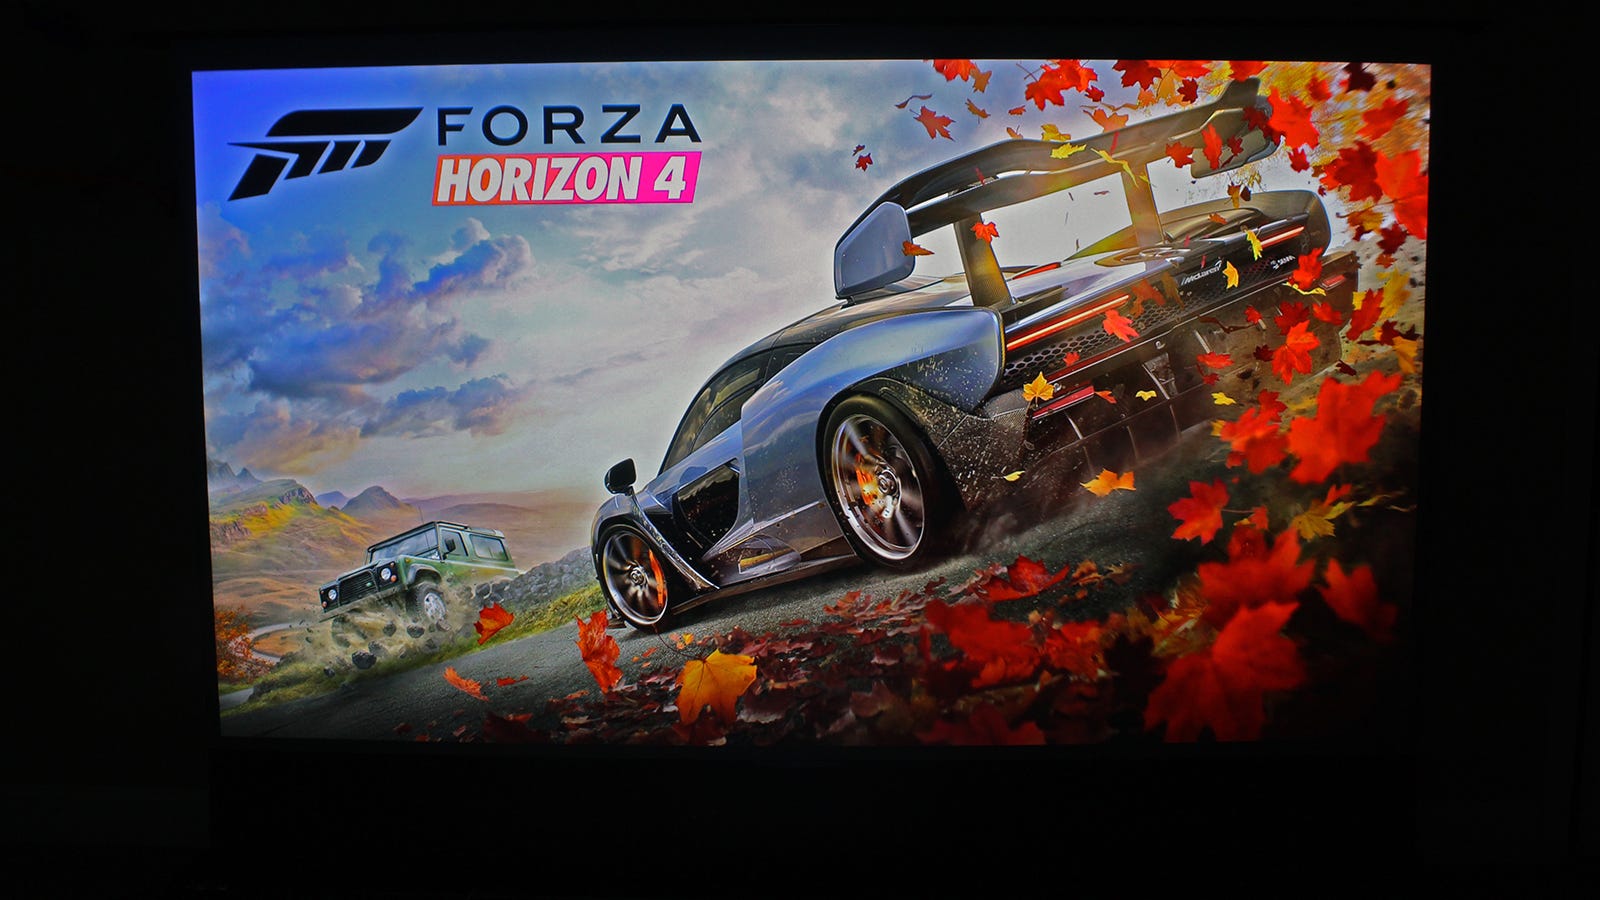 Forza Horizon 4 stänkskärm på 100 tums skärm.